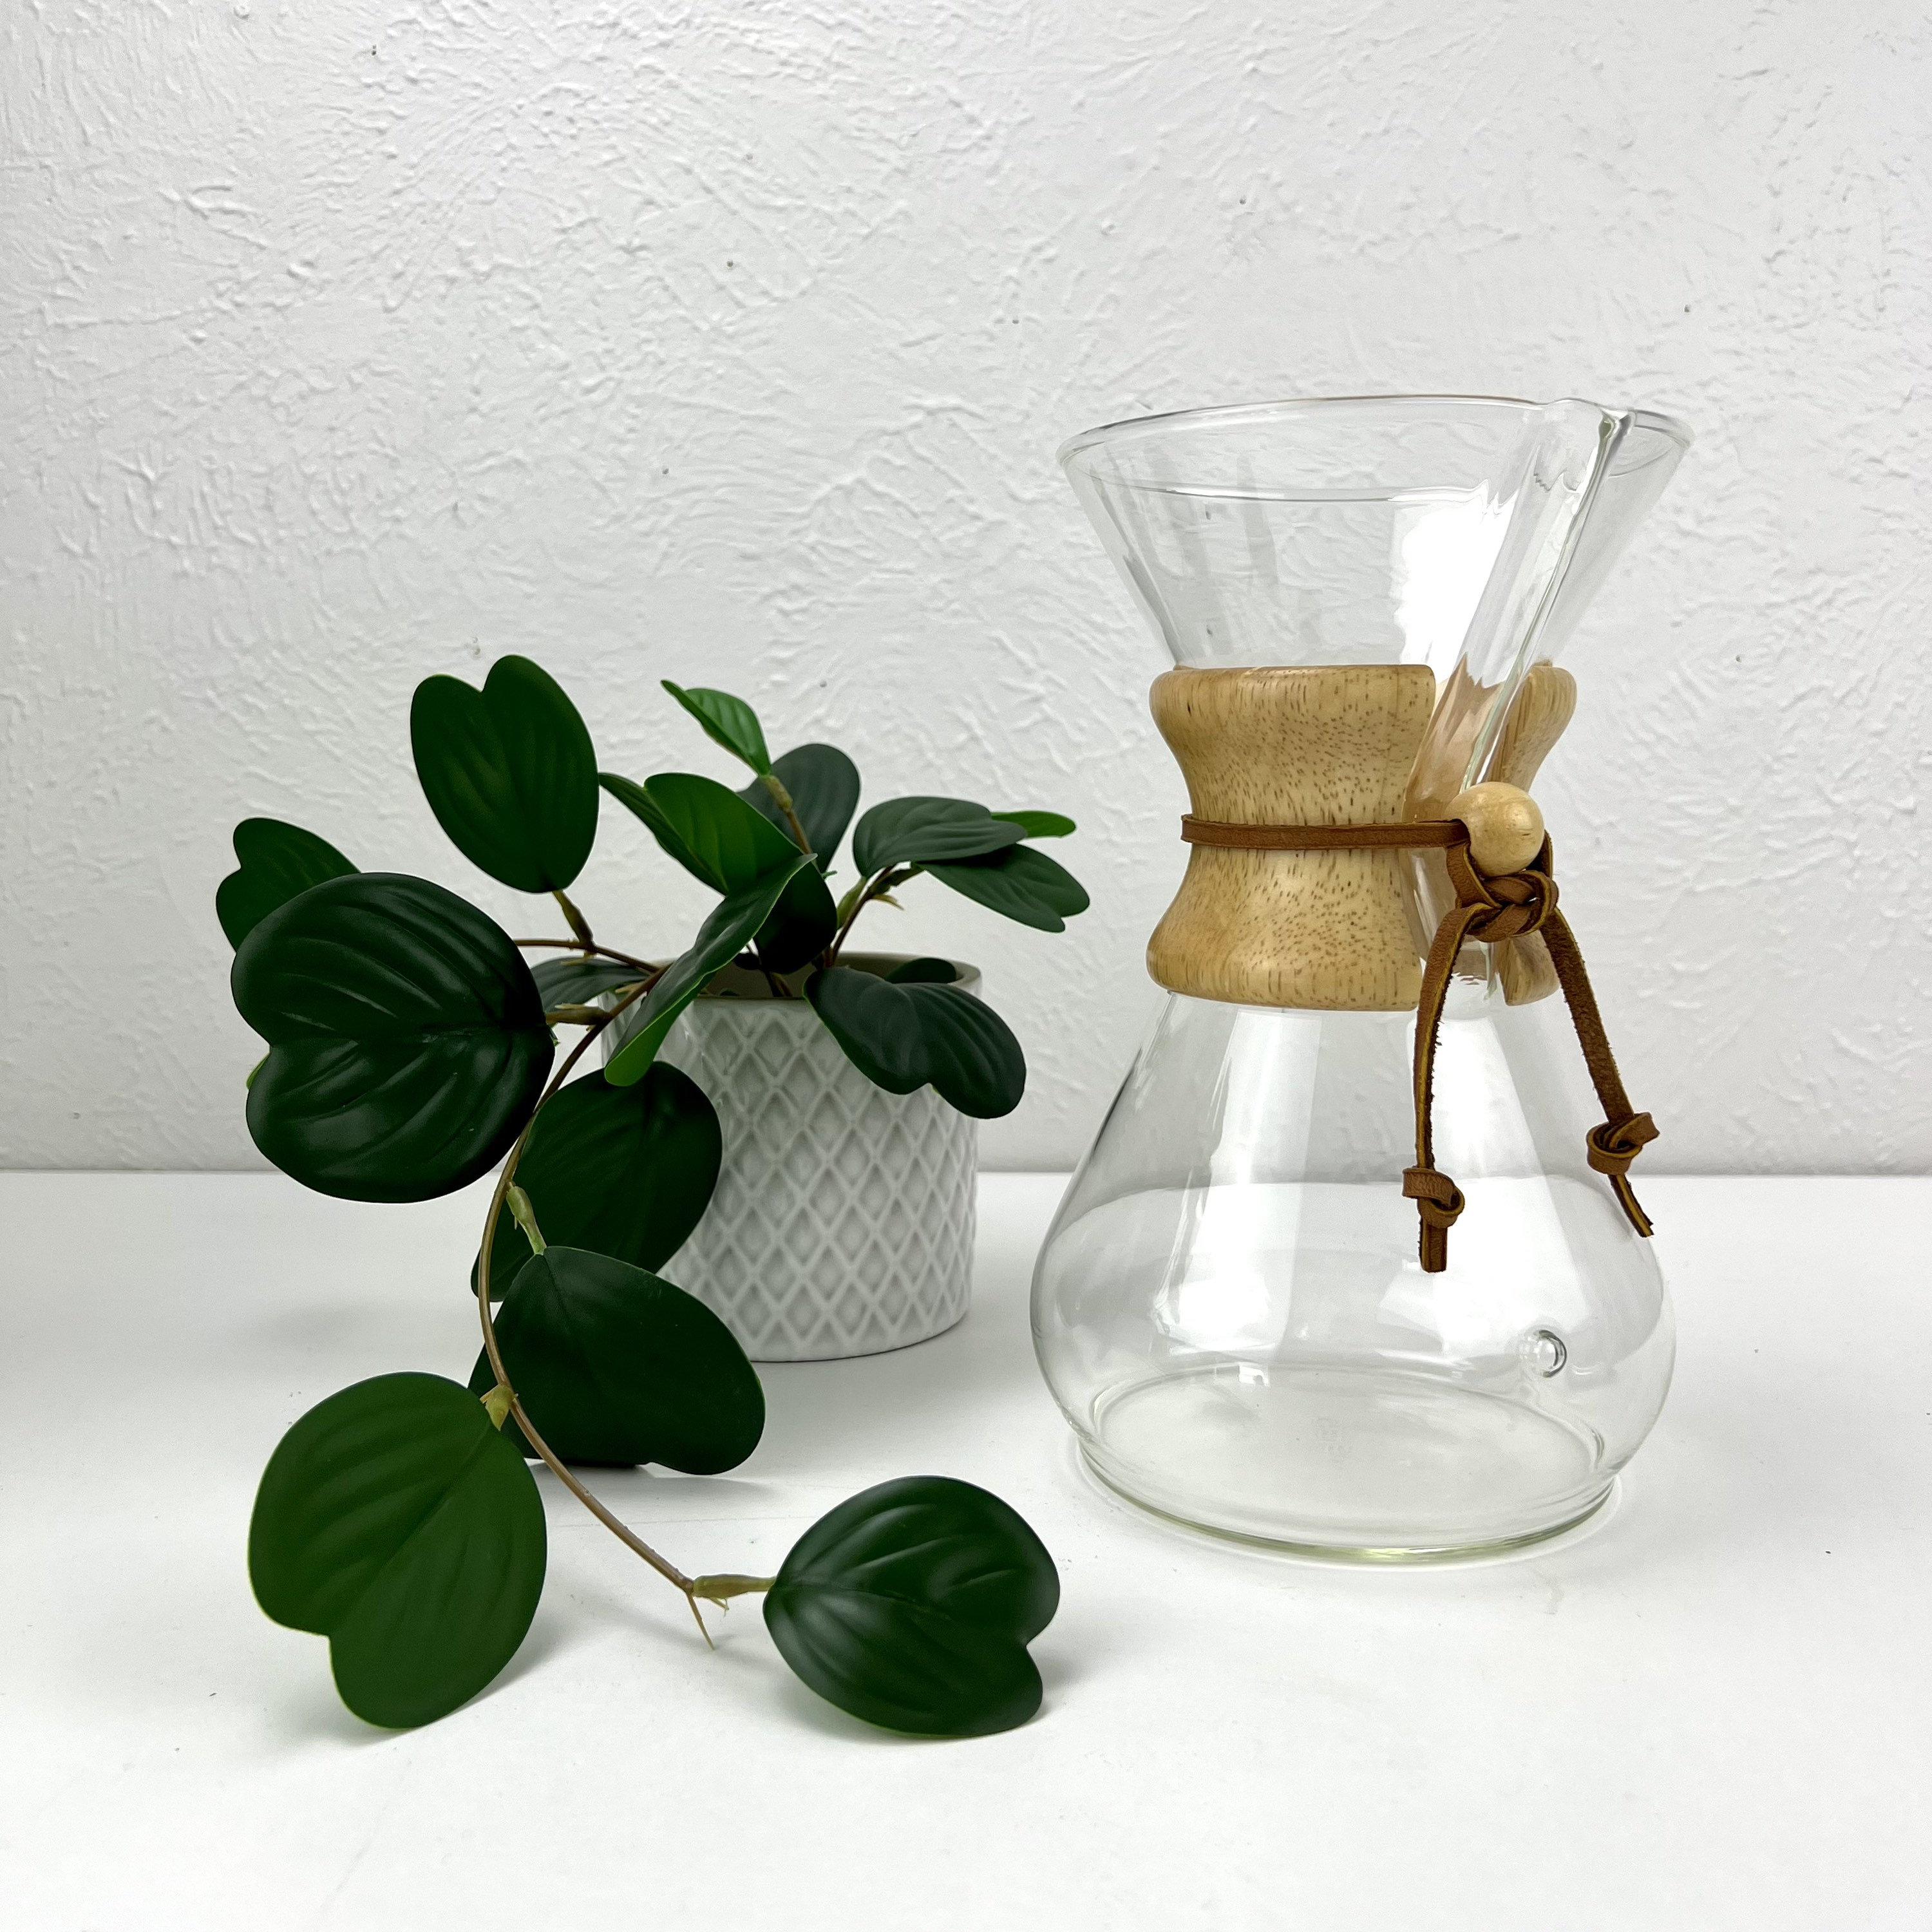 Chemex limited edition handblown 8-cup coffeemaker + caddy, lid